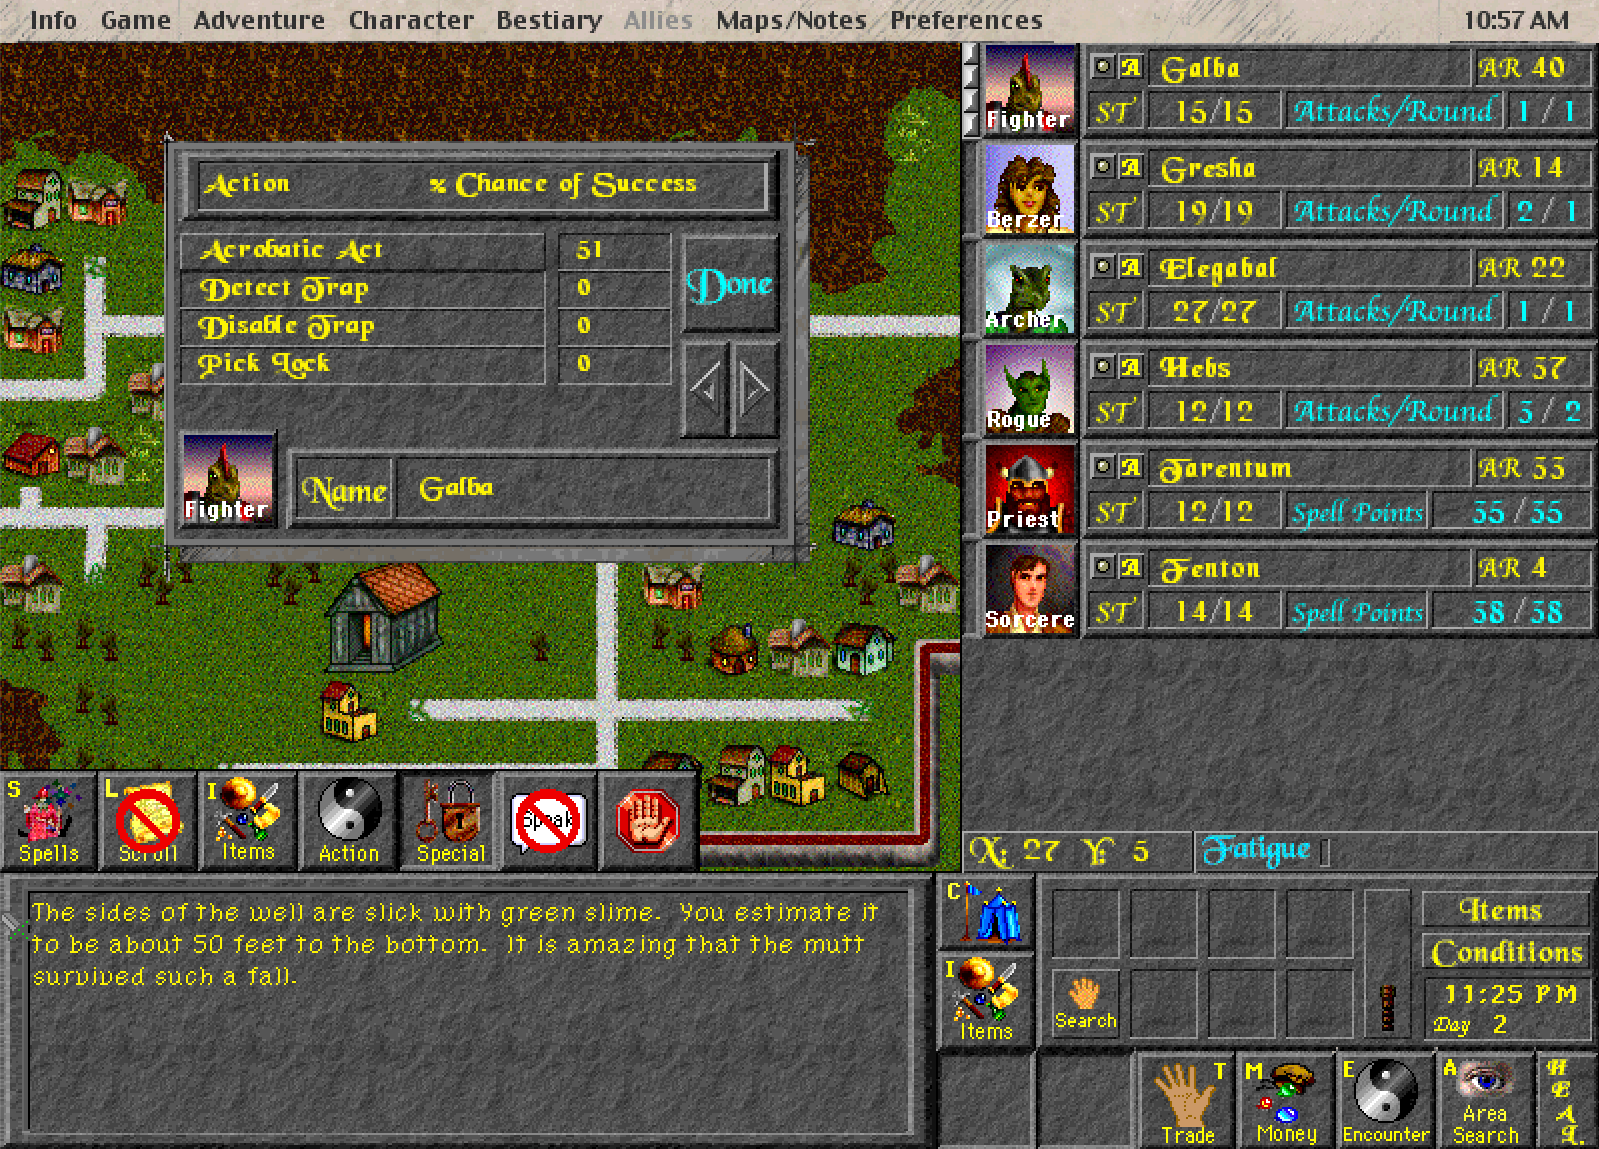 Screenshot of the Realmz encounter screen